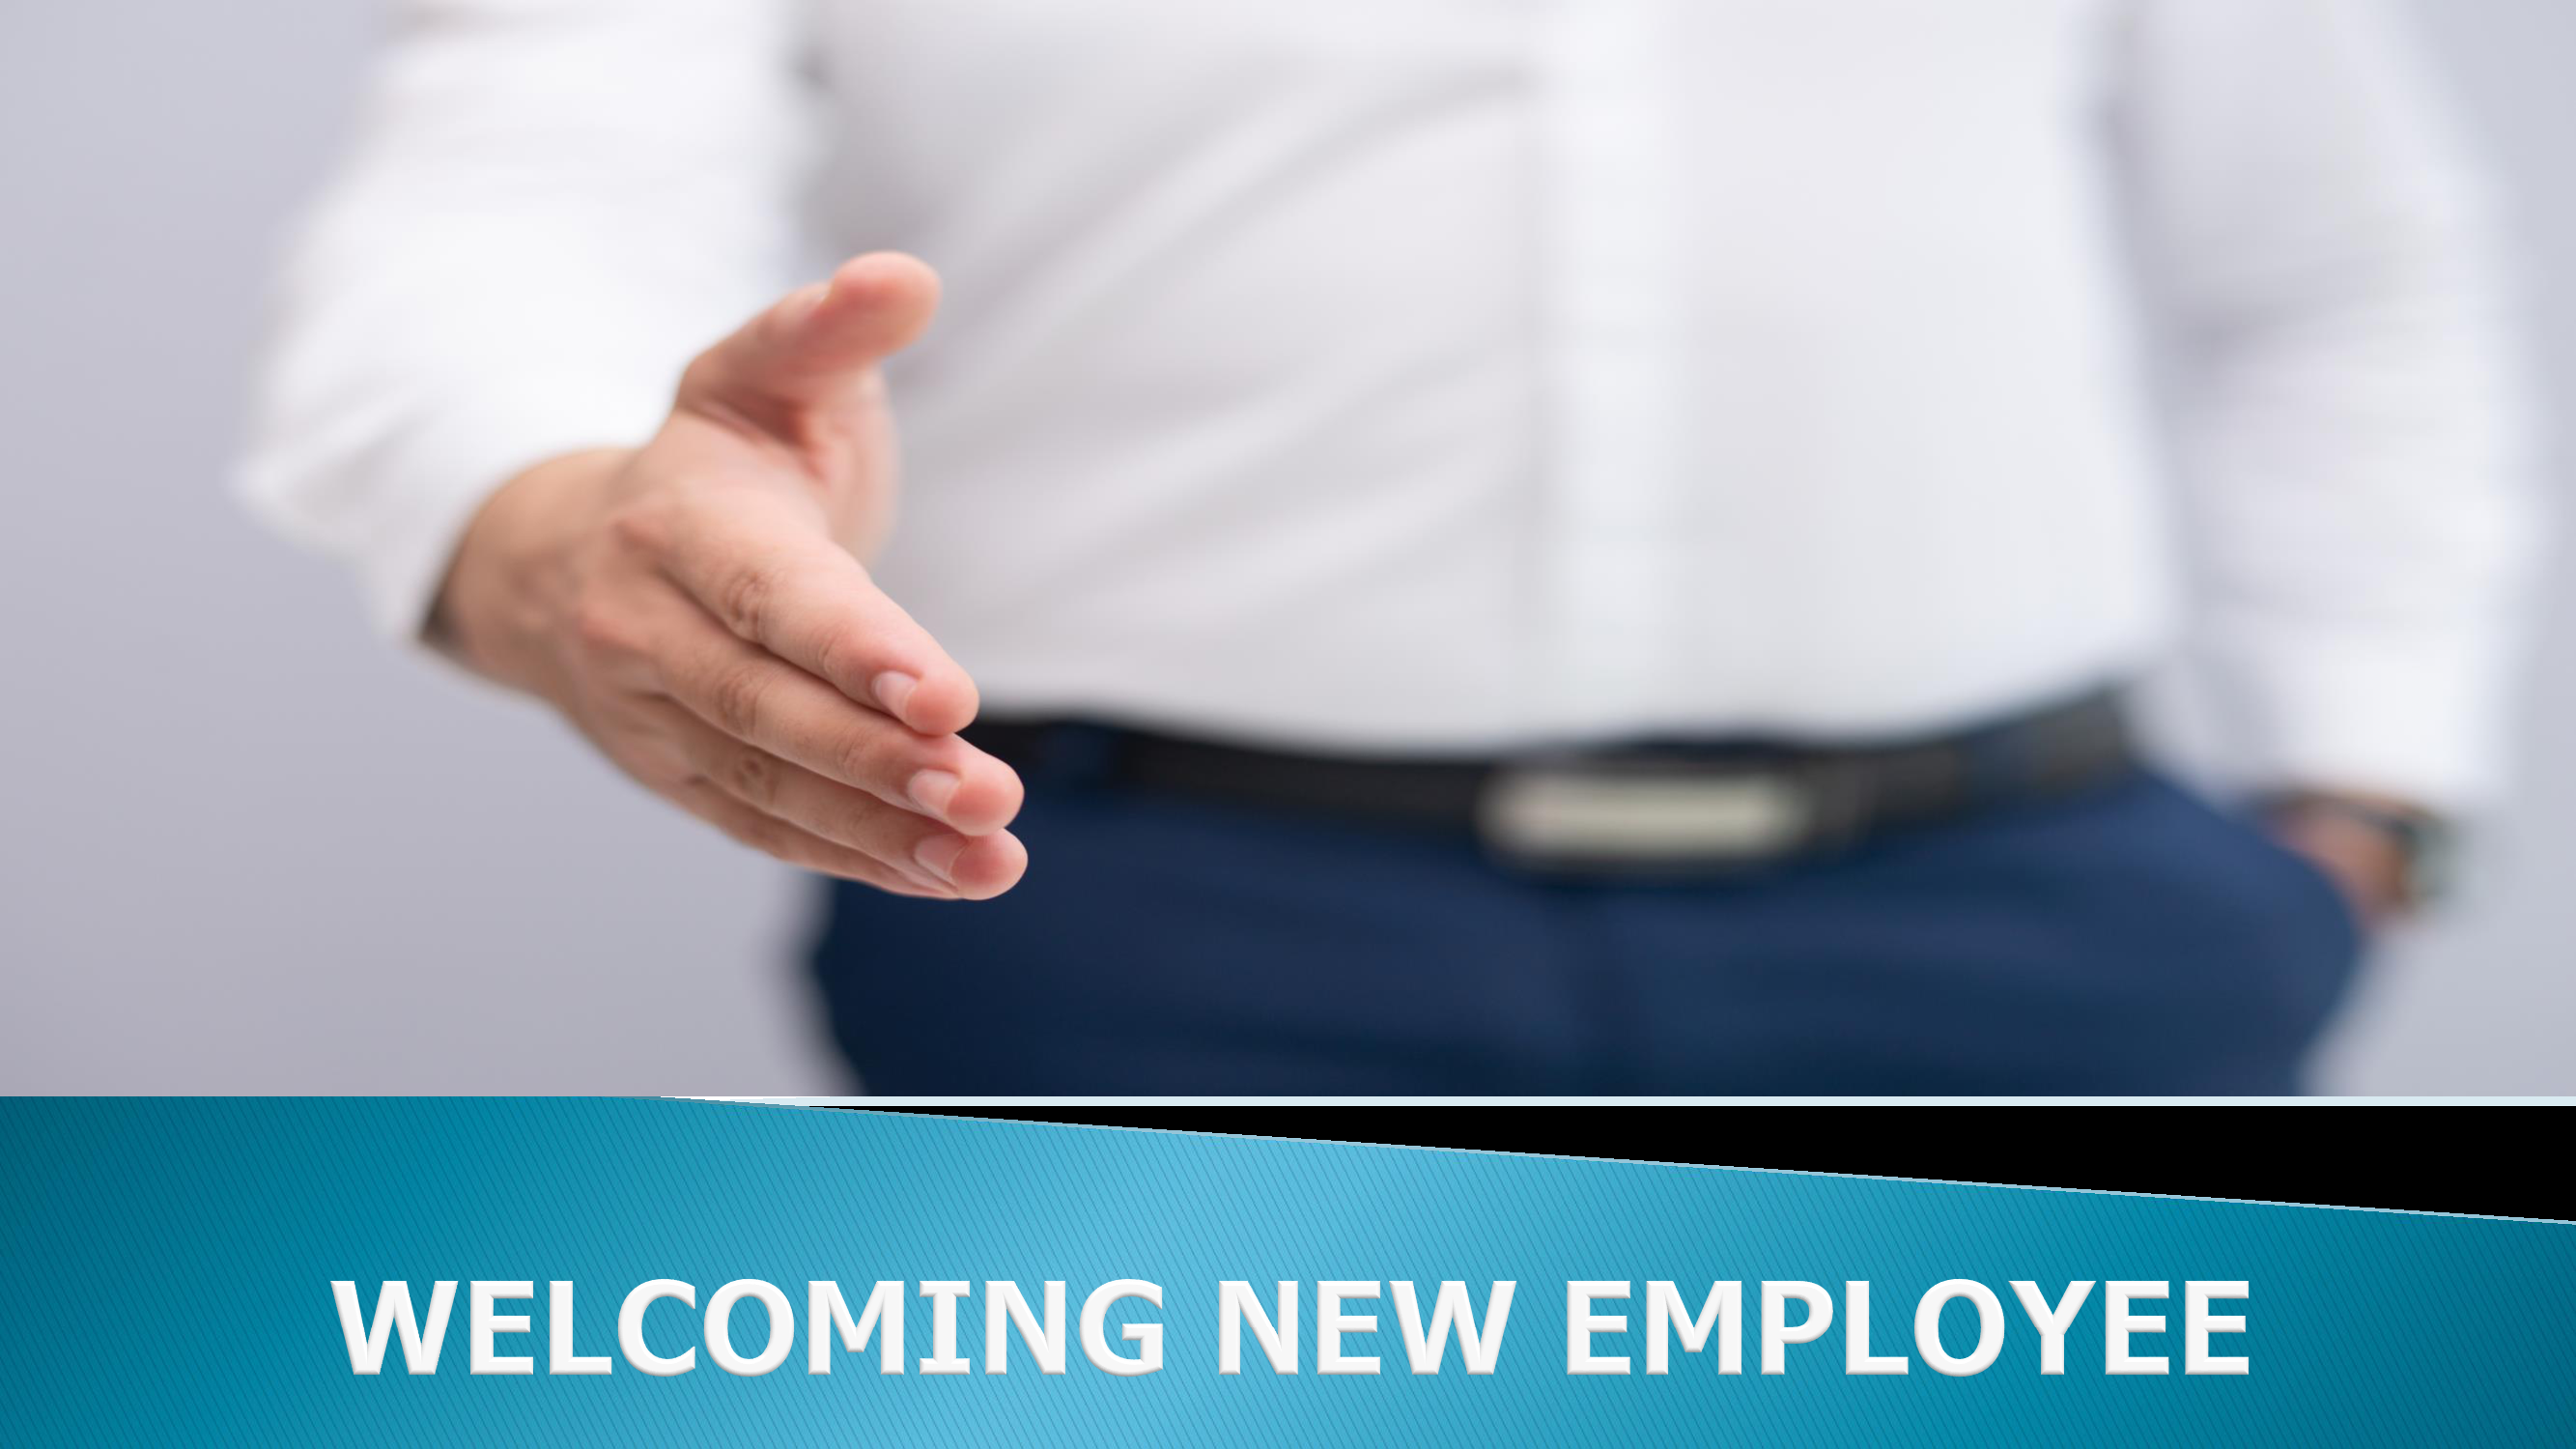 09 - Welcoming New Employee